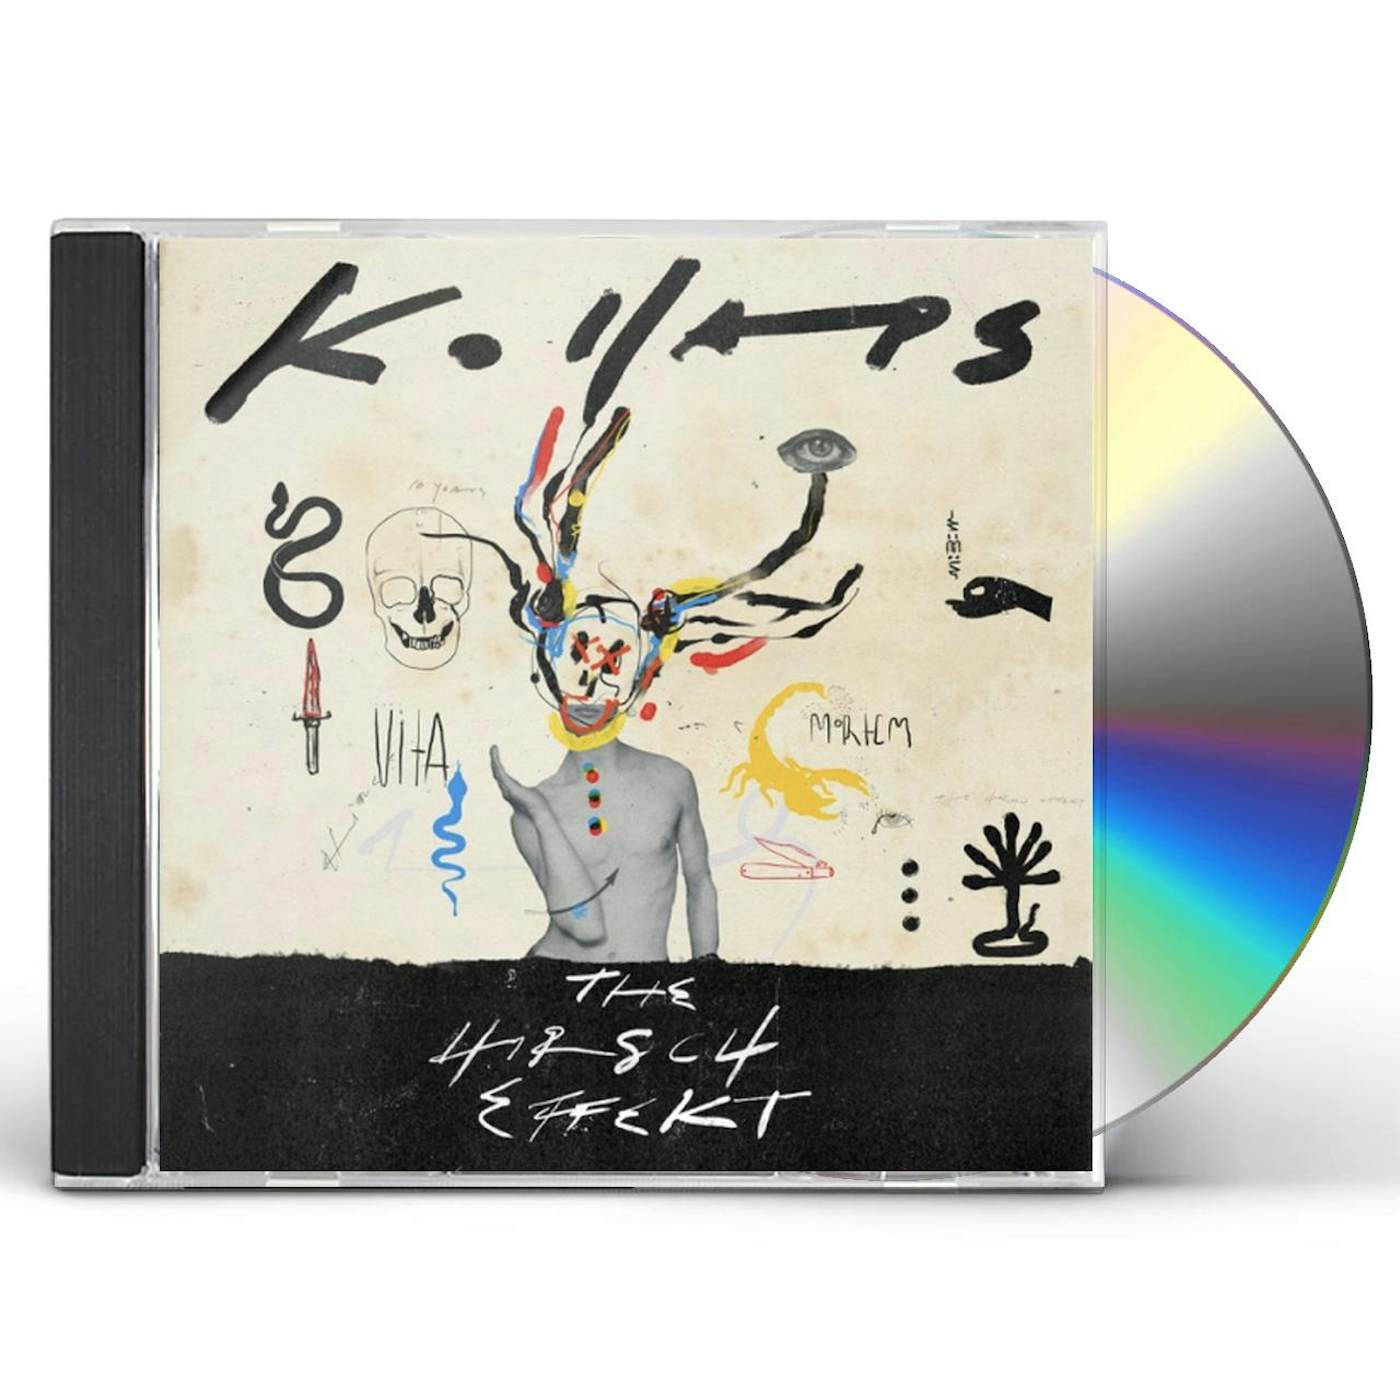 The Hirsch Effekt KOLLAPS CD